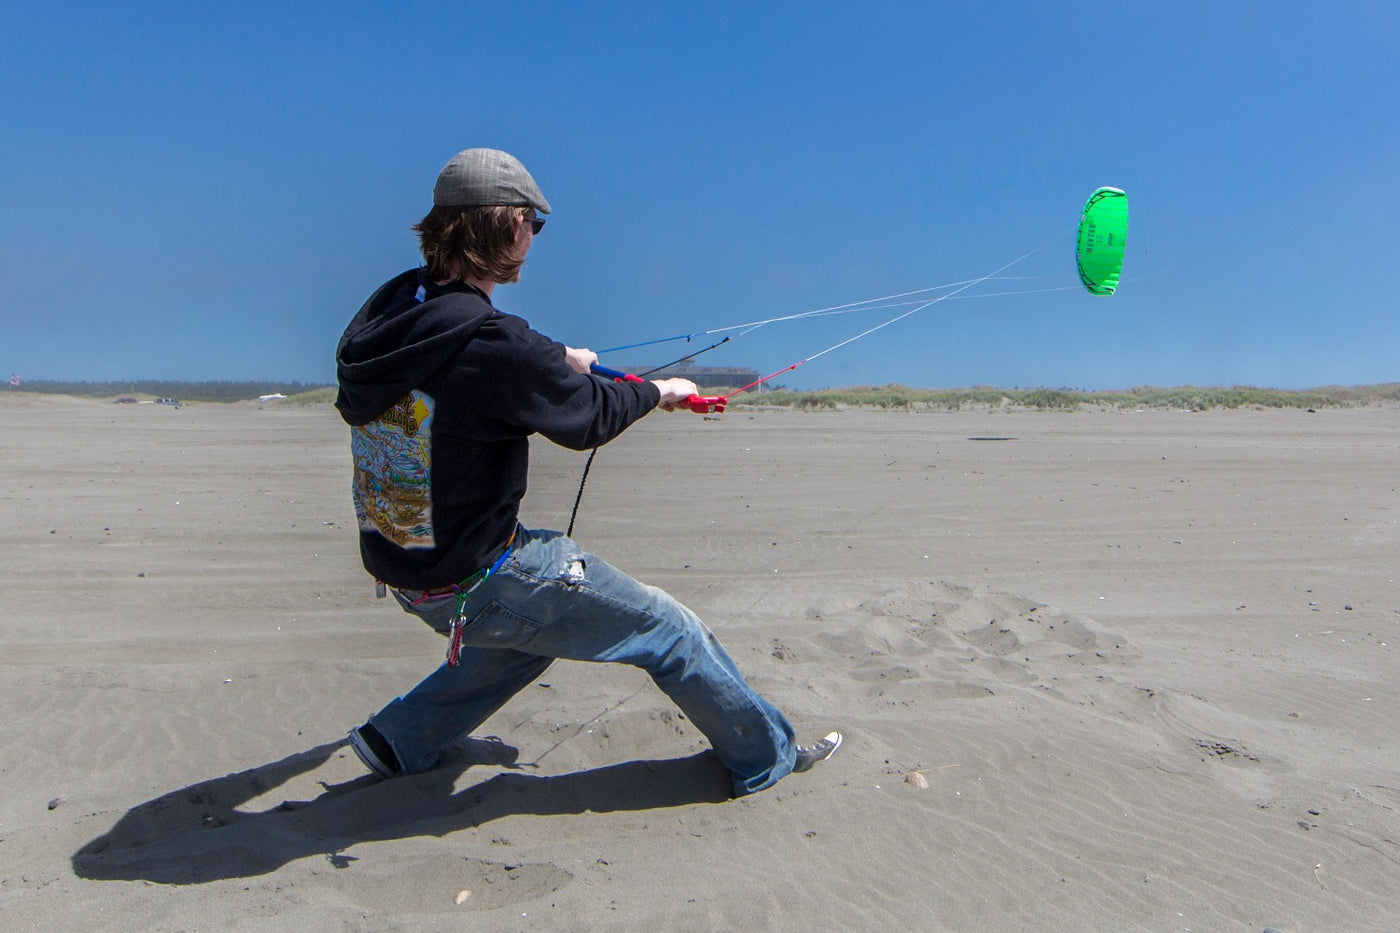 Man flying Mentor power kite on beach